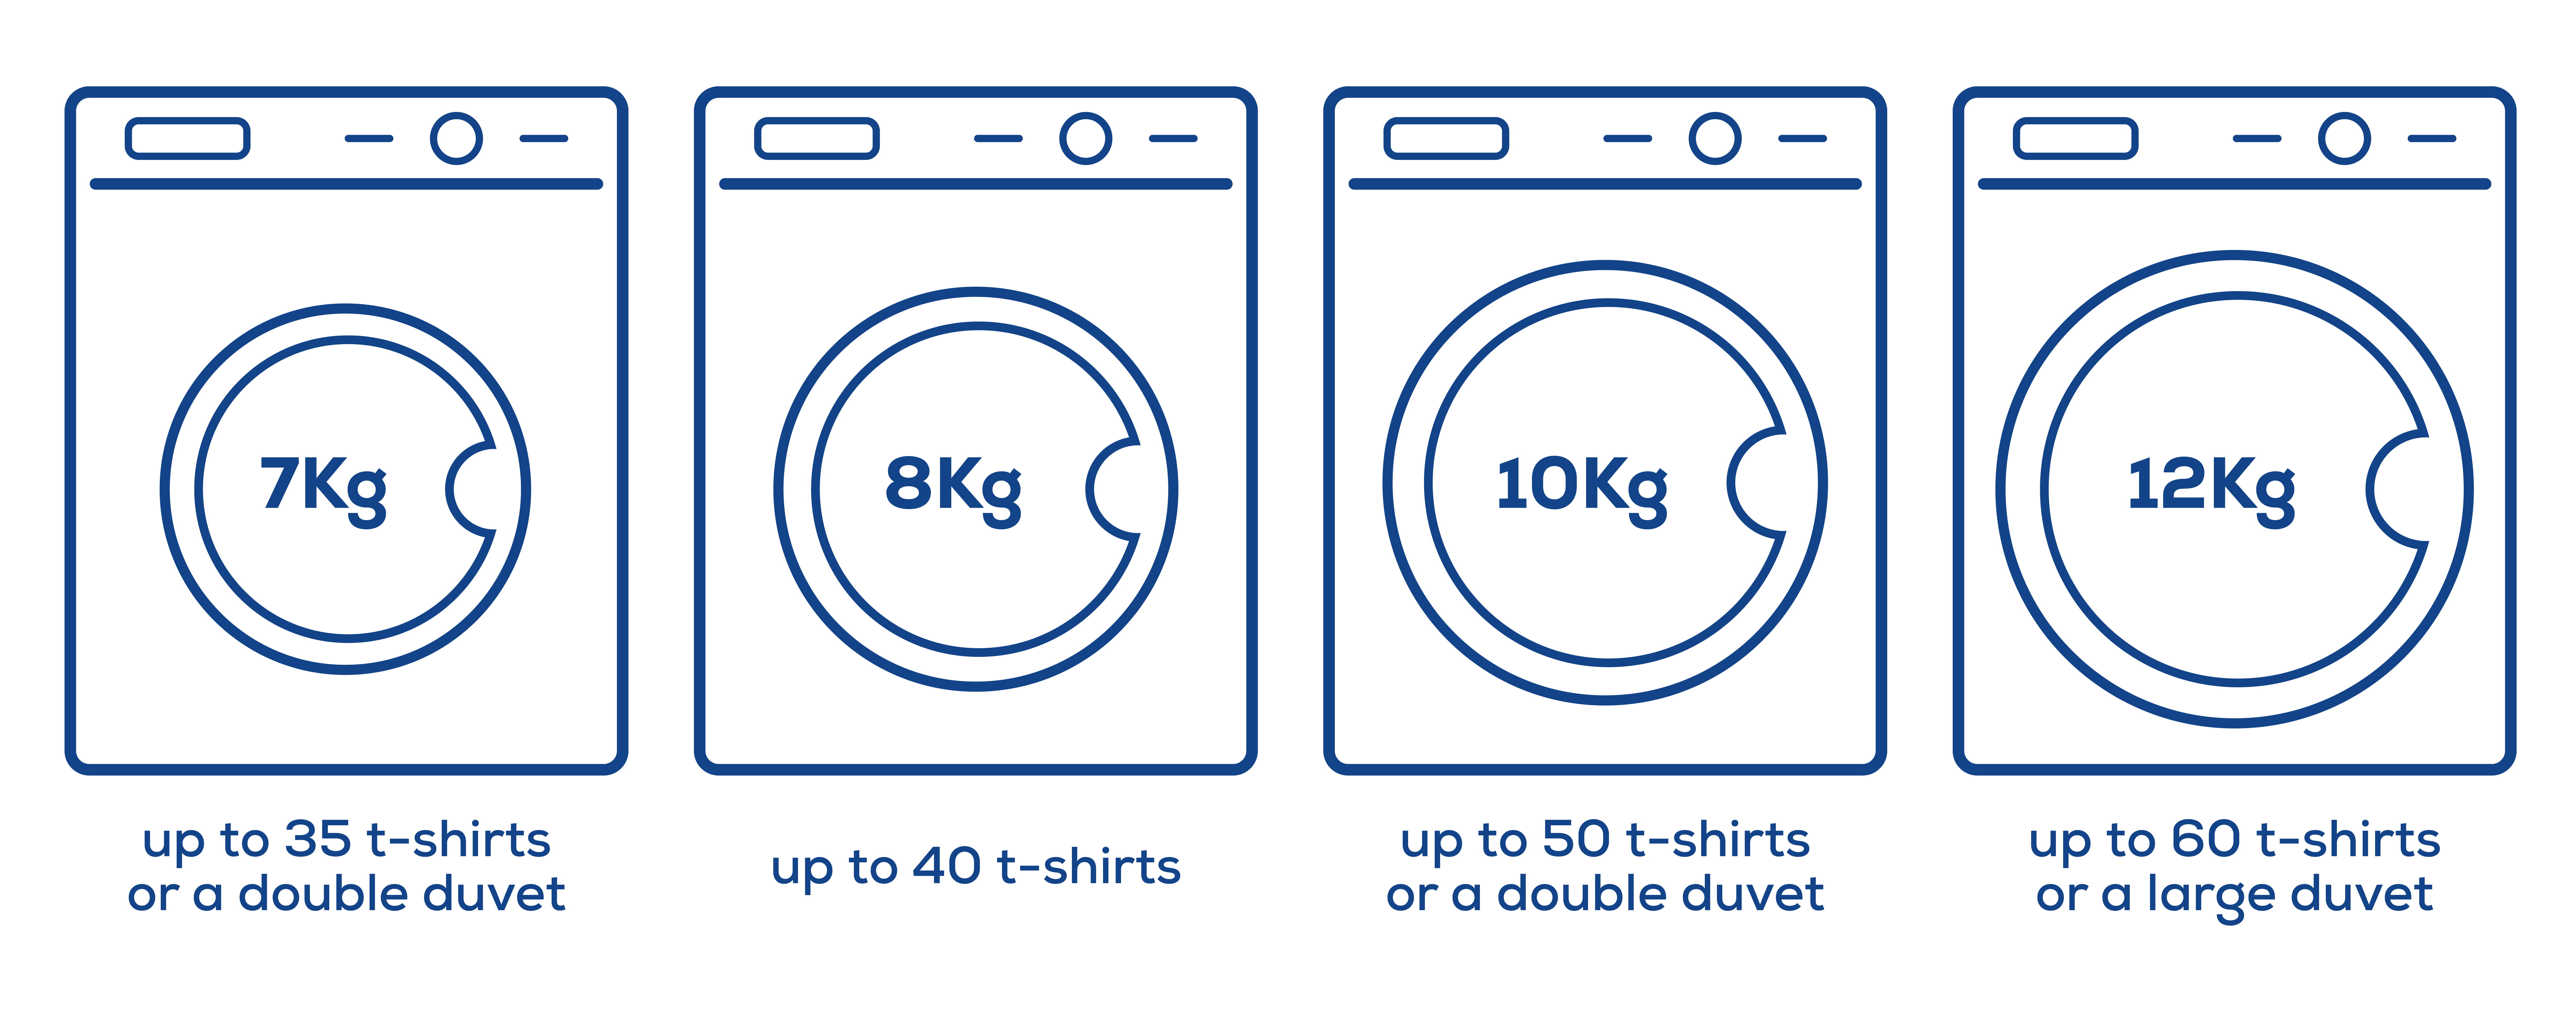 infographic of washing machine